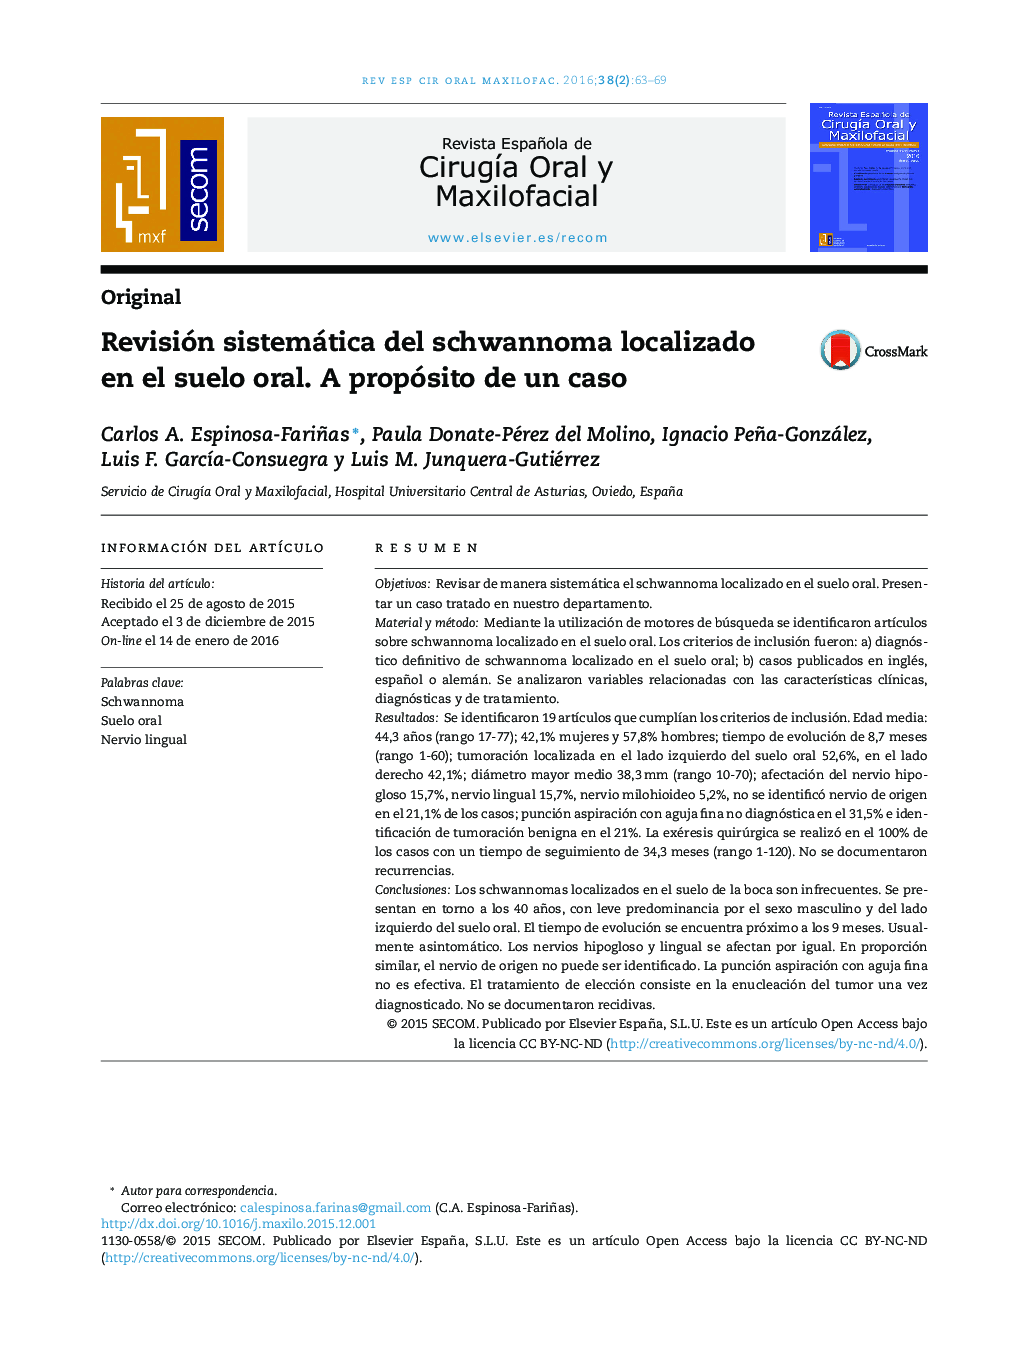 Revisión sistemática del schwannoma localizado en el suelo oral. A propósito de un caso